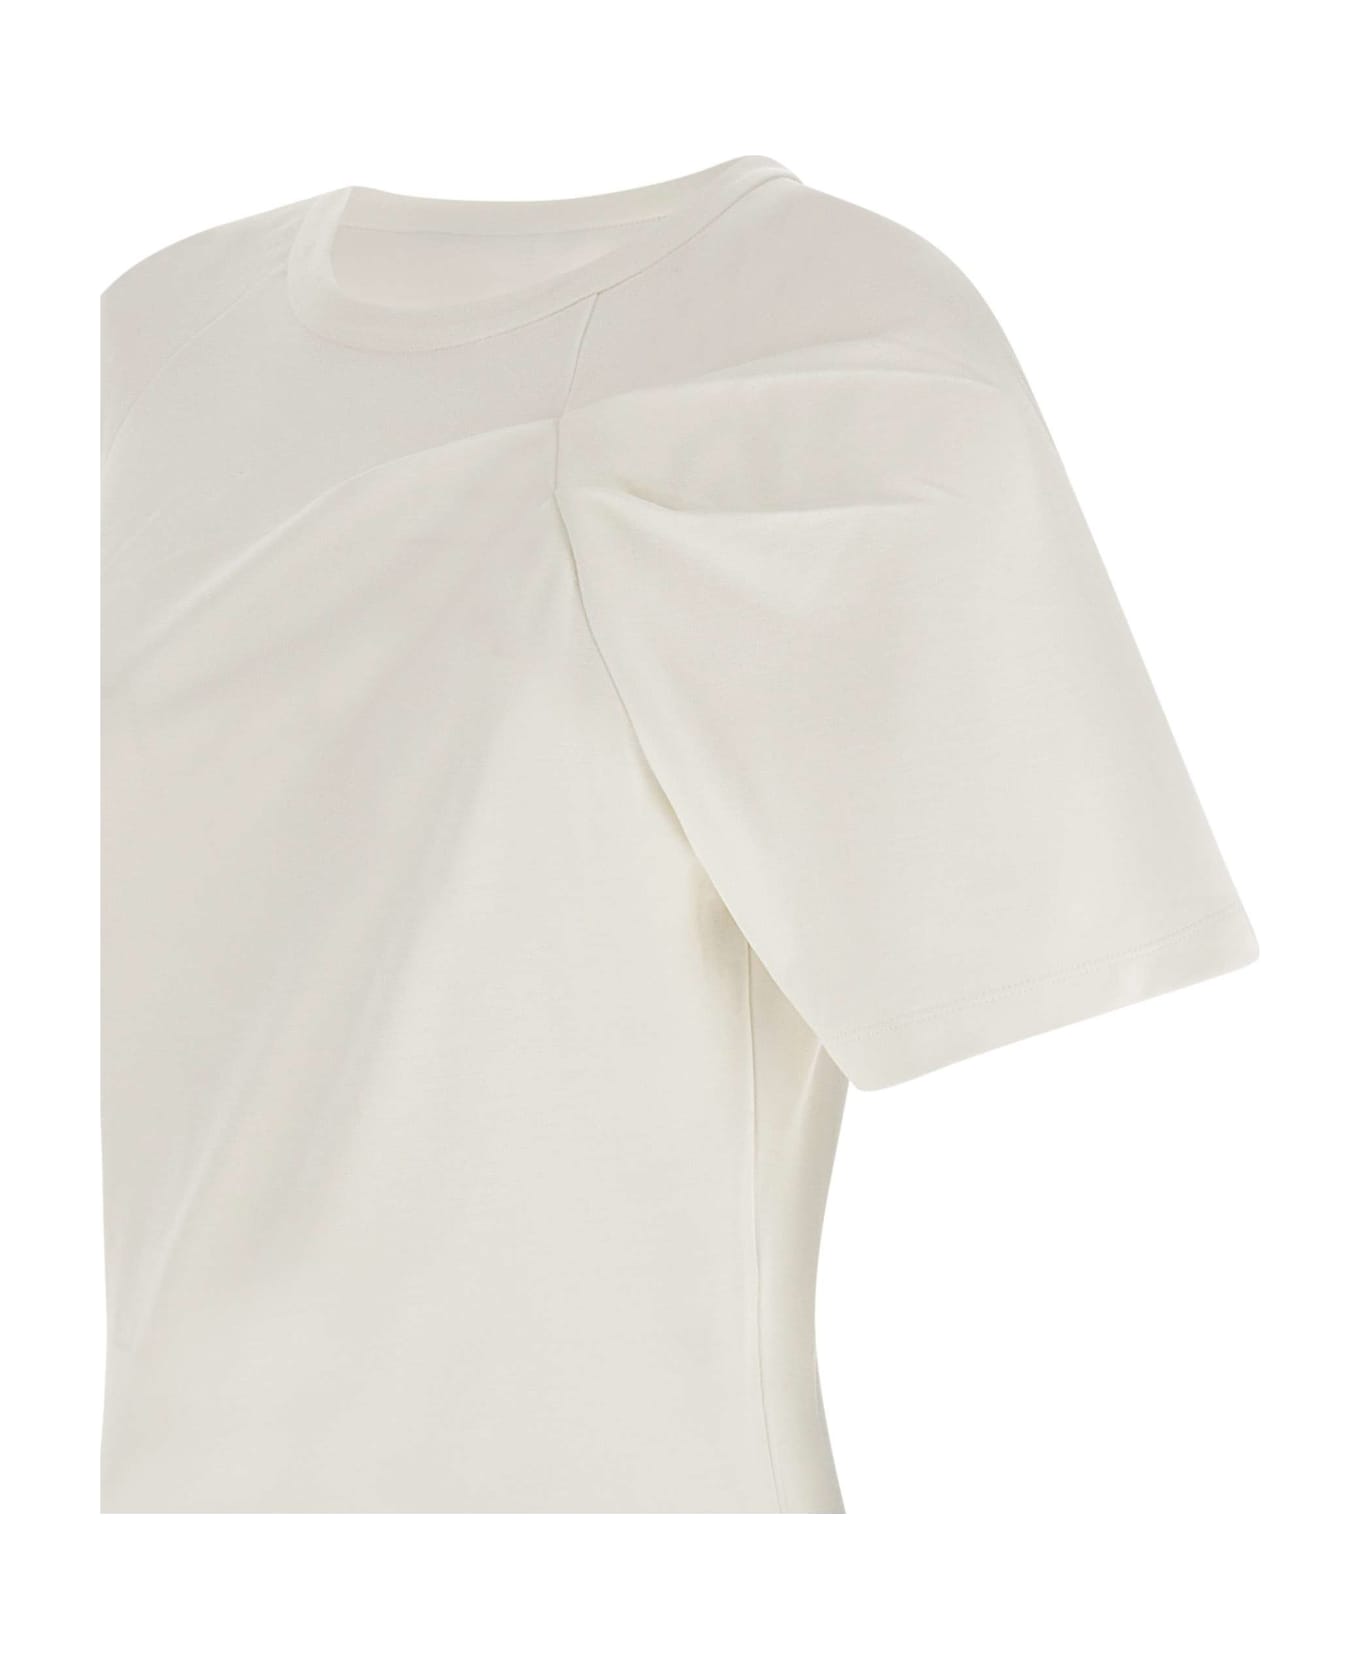 IRO "umae" Cotton T-shirt - WHITE Tシャツ